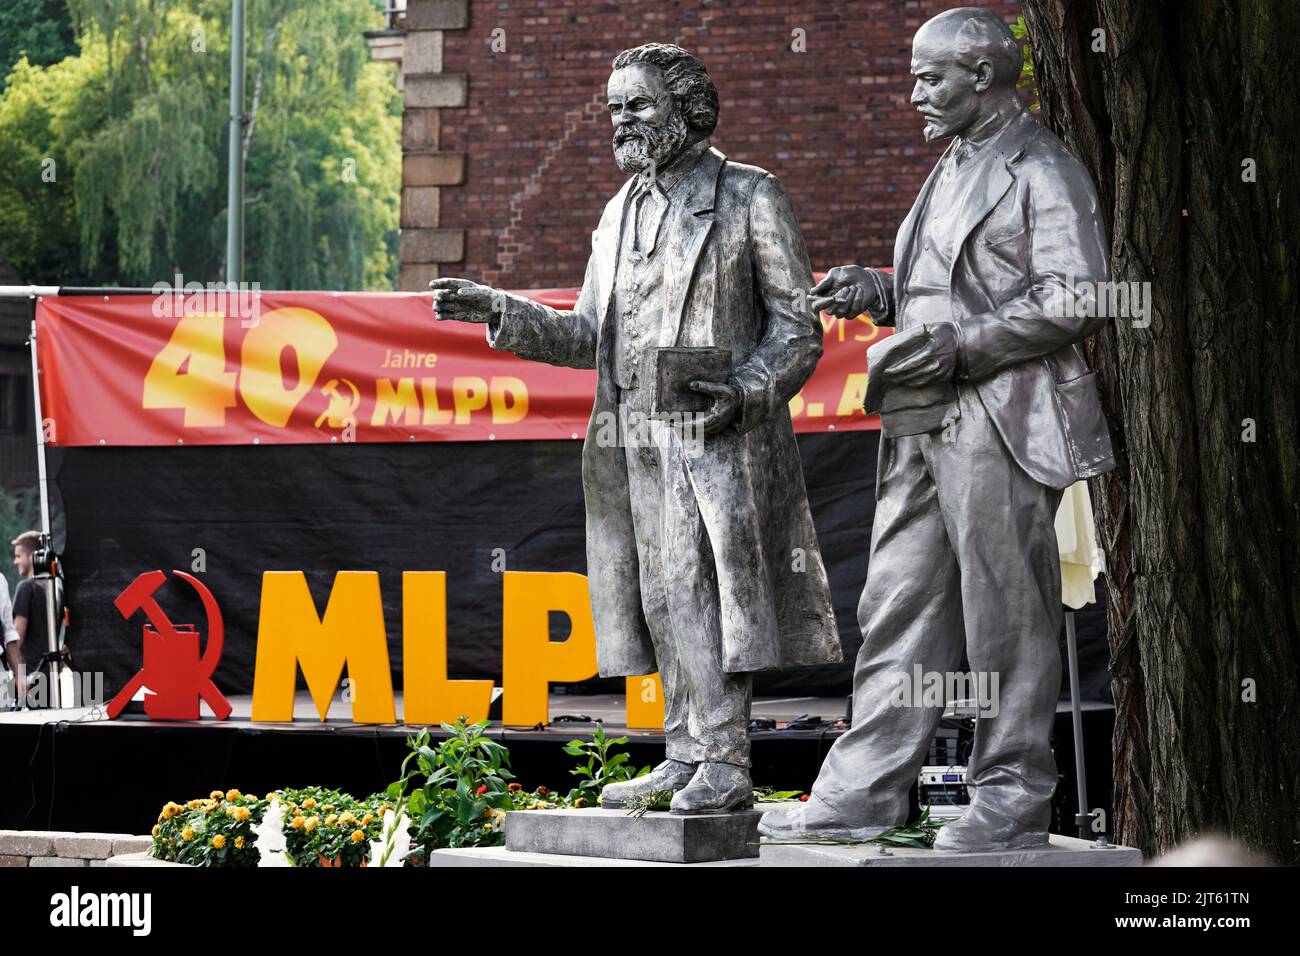 Die Kommunistische Partei der MLPD (marxistisch-leninistische Partei Deutschlands) enthüllte am 27. August 2022 eine Statue des Sozialtheoretikers Karl Marx (1818-1883) (Proth links). Die 2,11 Meter hohe Statue aus Aluminiumguss steht direkt neben dem Lenin-Denkmal (rechts), das die Partei 2020 vor ihrem Parteihauptsitz in Gelsenkirchen errichtet hat. Gelsenkirchen, 28. August 2022 Stockfoto